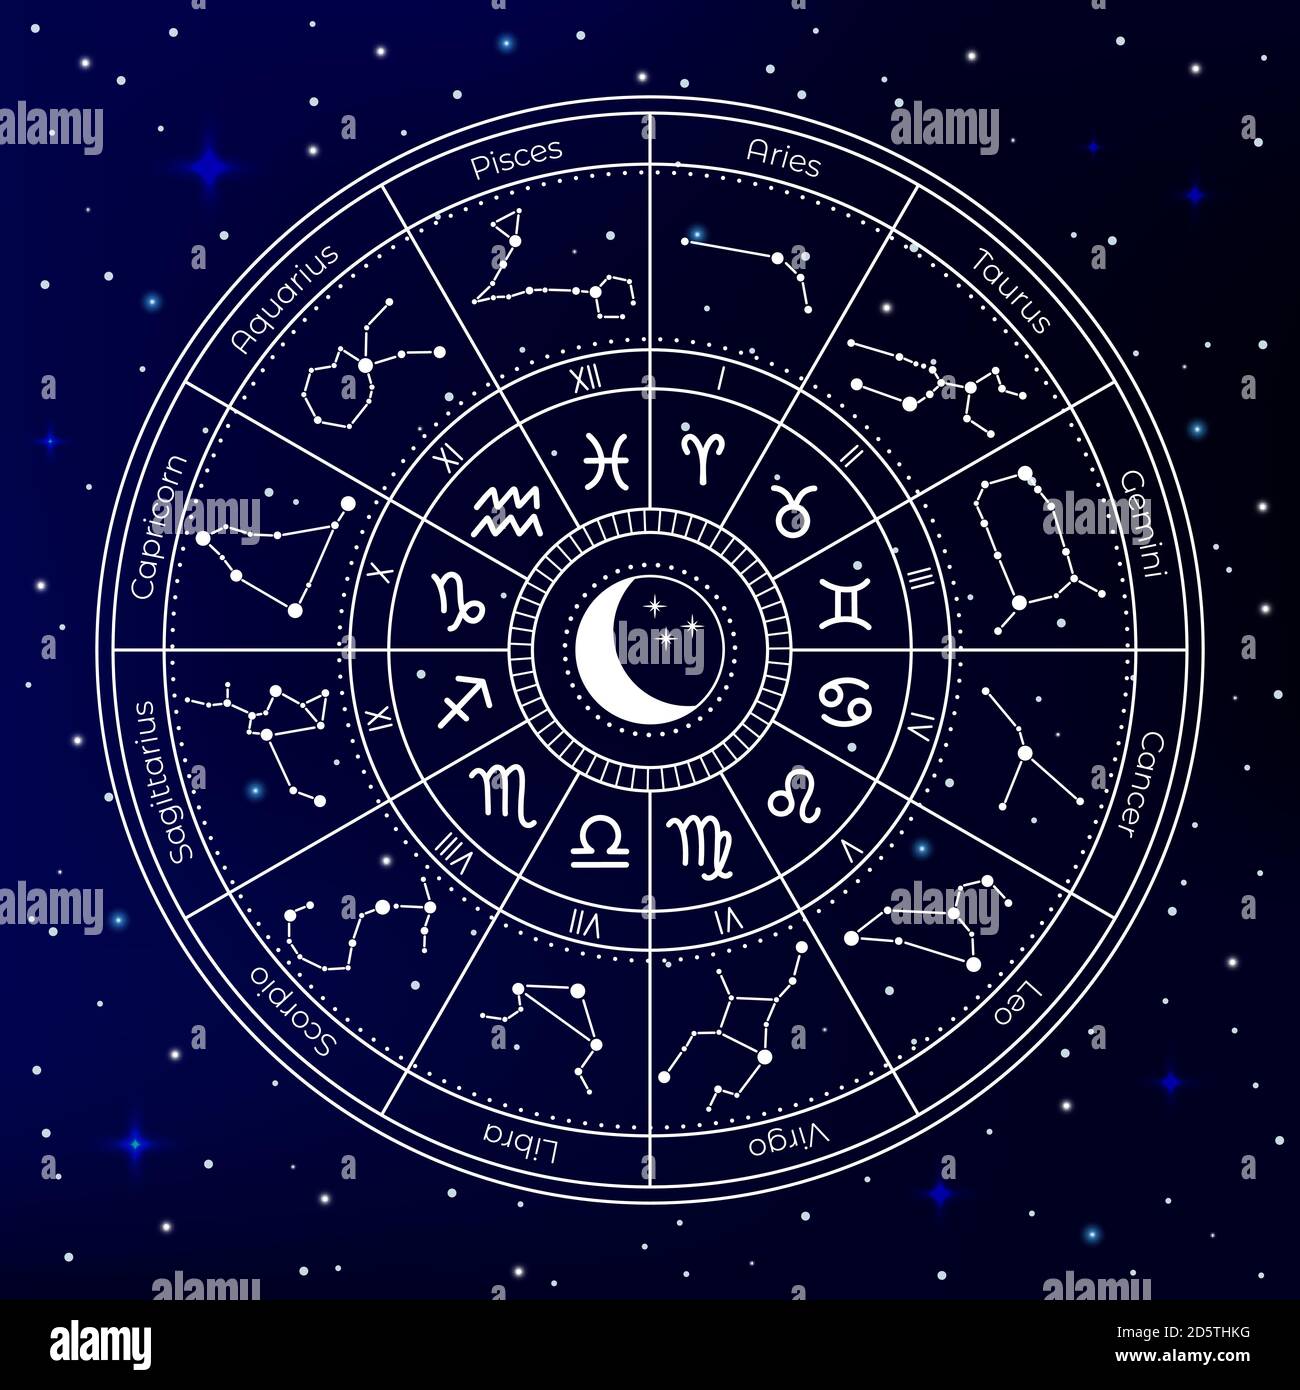 Cerchio astrologico zodiaco. Ruota della costellazione astrologica, segni dell'oroscopo zodiaco, mappa natale mistica, mappa zodiacale del cielo della ruota Illustrazione Vettoriale